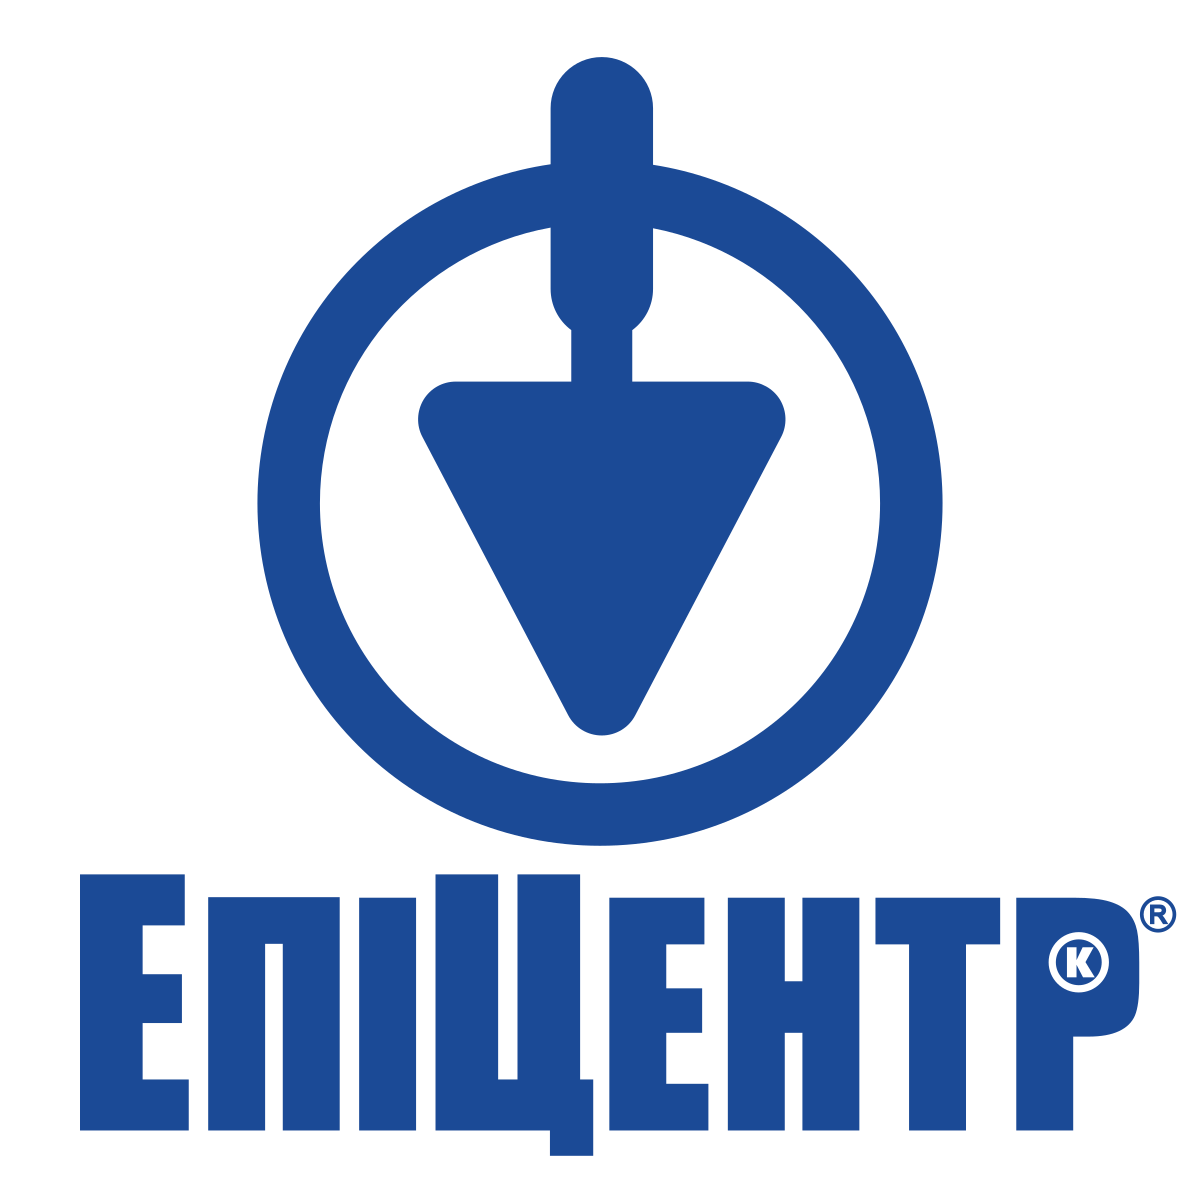 Epicentr retailer logo